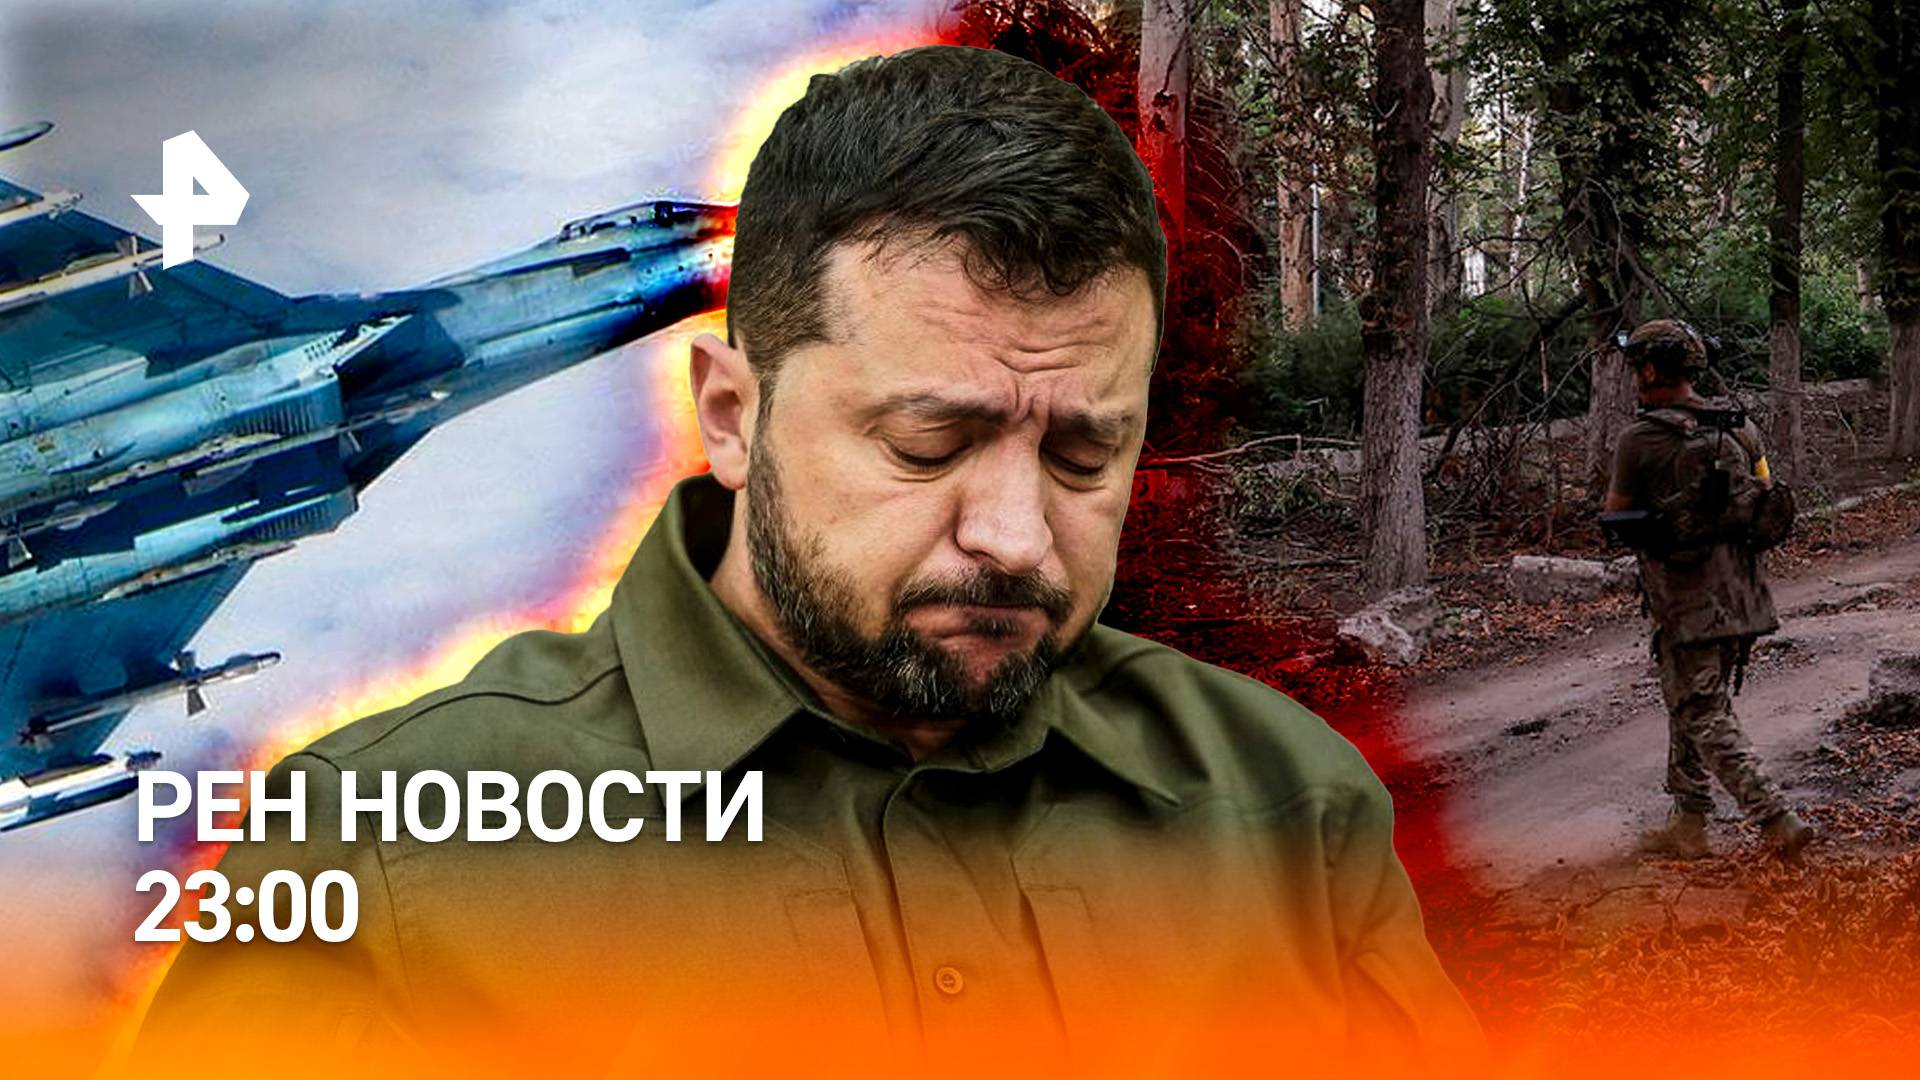 История повторяется: Киев заговорил о мире / Взрыв машины на севере Москвы /РЕН НОВОСТИ 23:00, 24.07